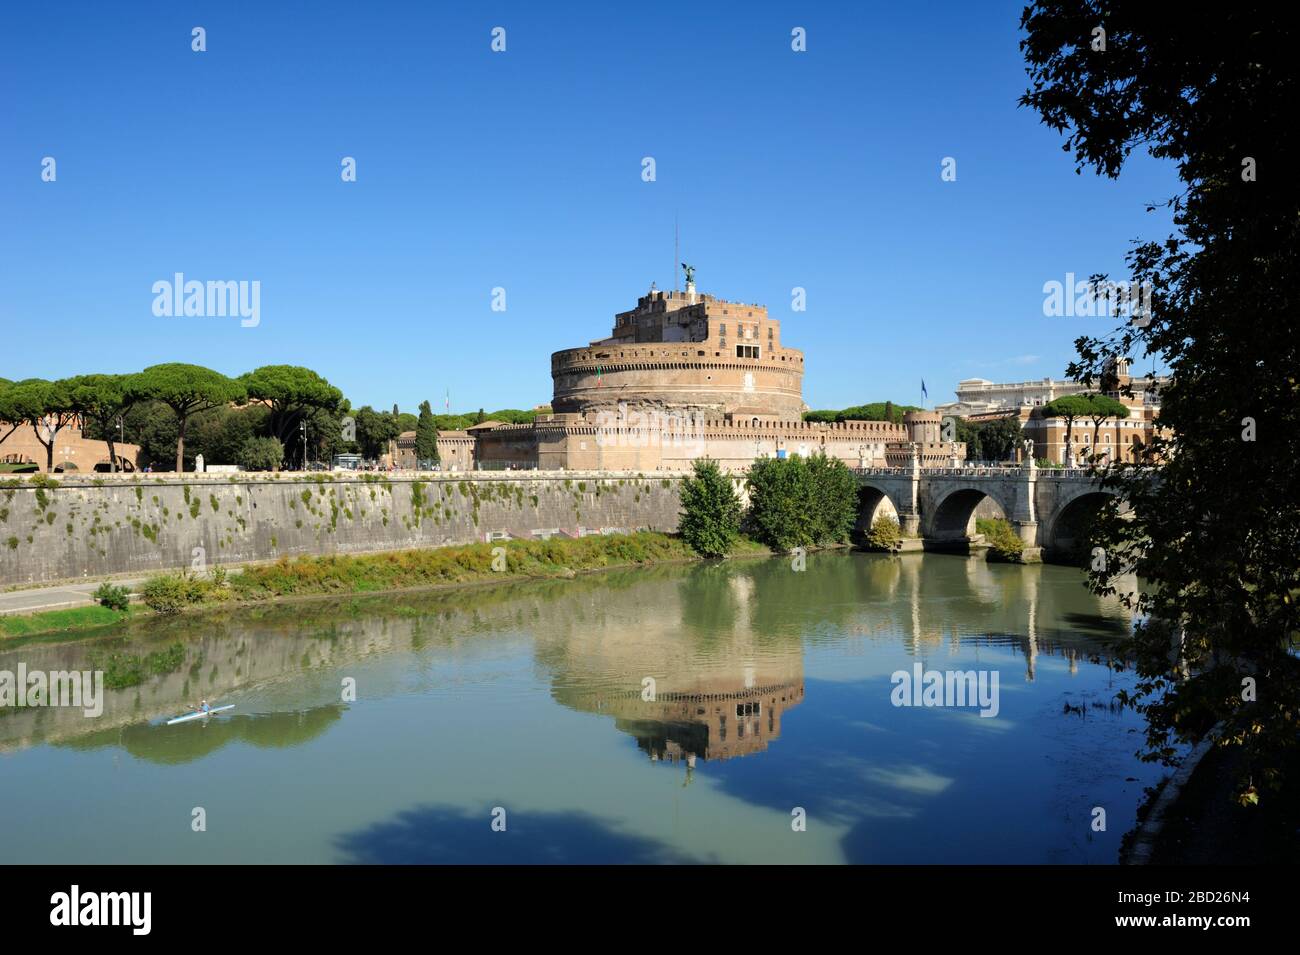 Italy, Rome, Castel Sant'Angelo Stock Photo